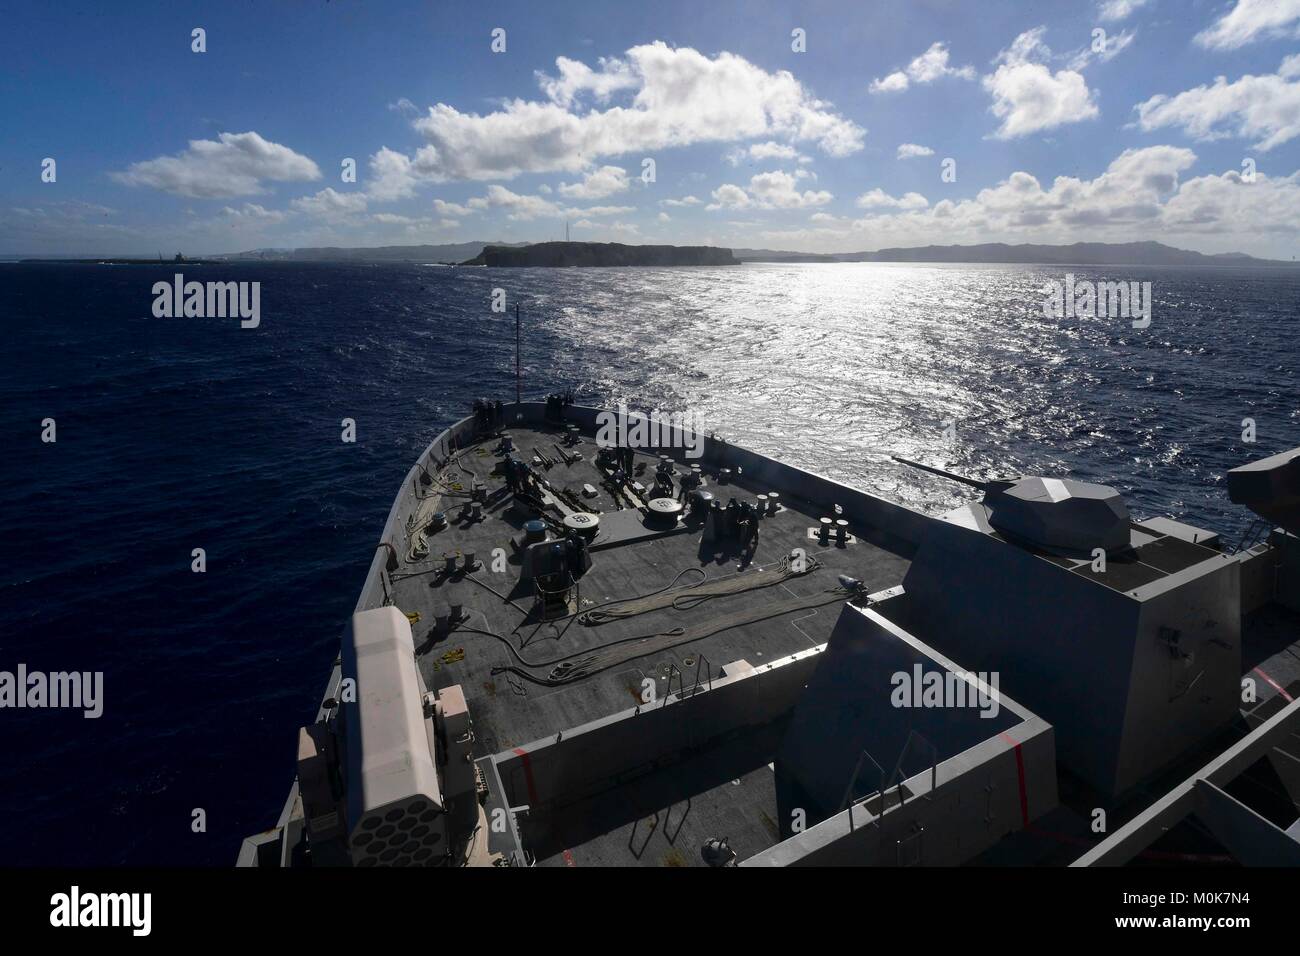 El dock buque anfibio de transporte USS San Diego (LPD 22) llega en Guam durante un puerto programado visitar. San Diego, parte de la América Amphibious Ready Group, inició con 15 MEU, está operando en la región del Pacífico Indo-Asia para fortalecer las asociaciones y servir como fuerza de respuesta preparada para cualquier tipo de contingencia. Foto de stock